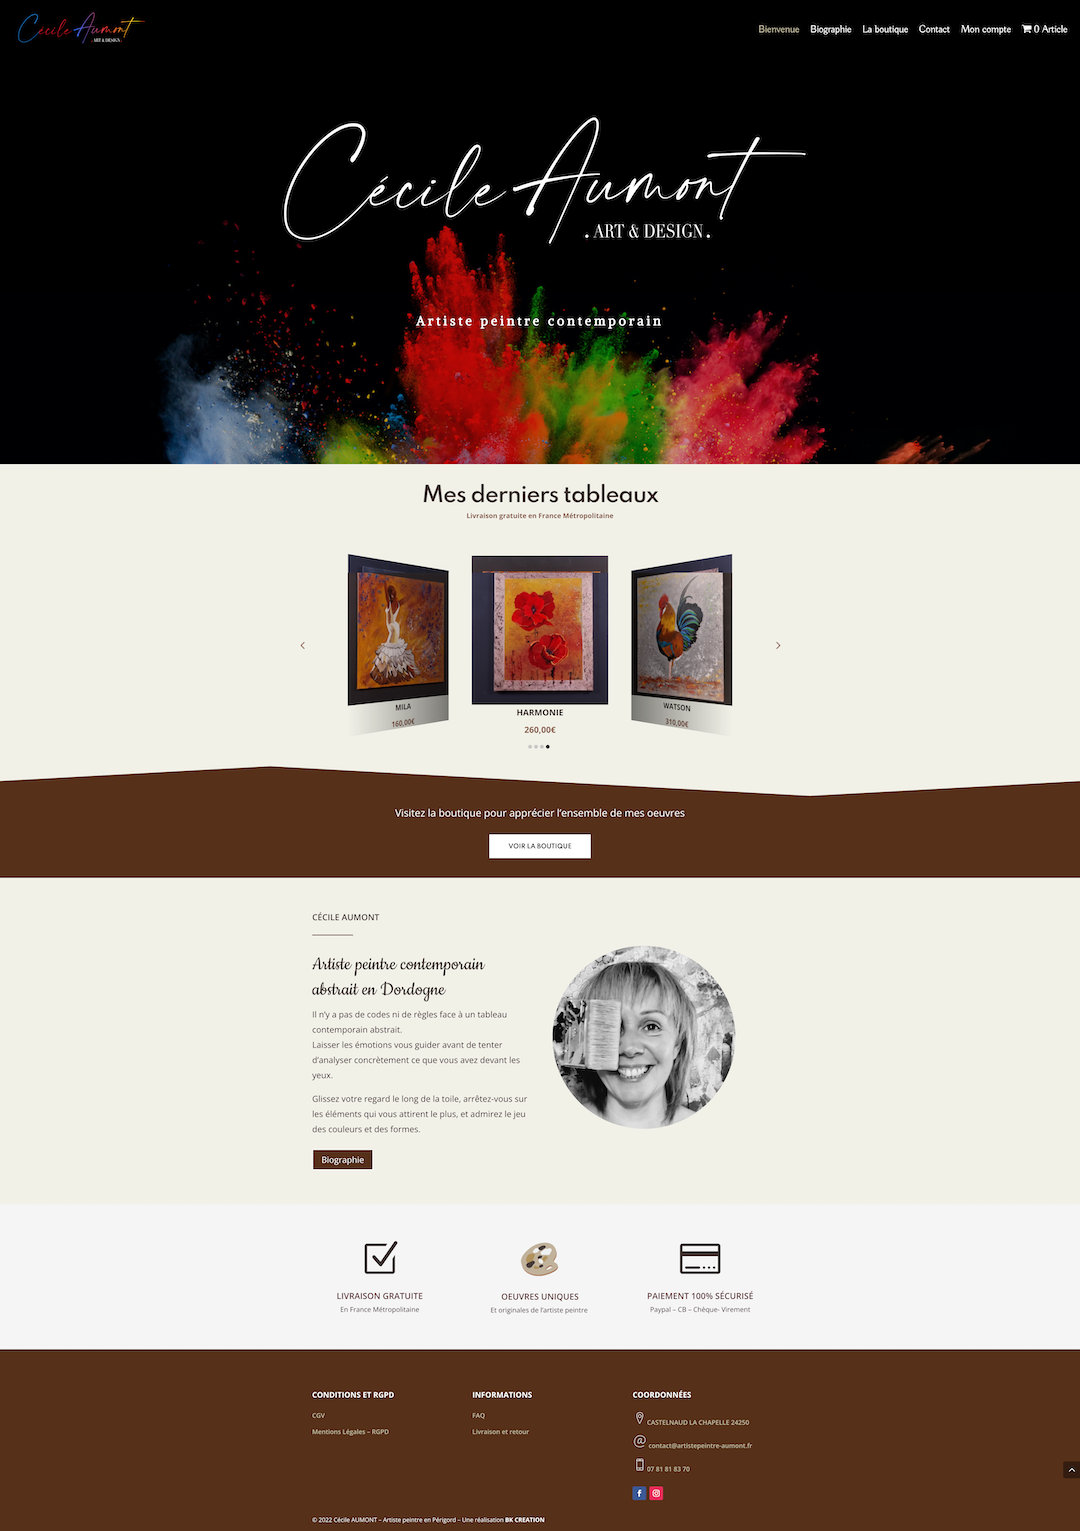 site web ecommerce cecile aumont artiste peintre